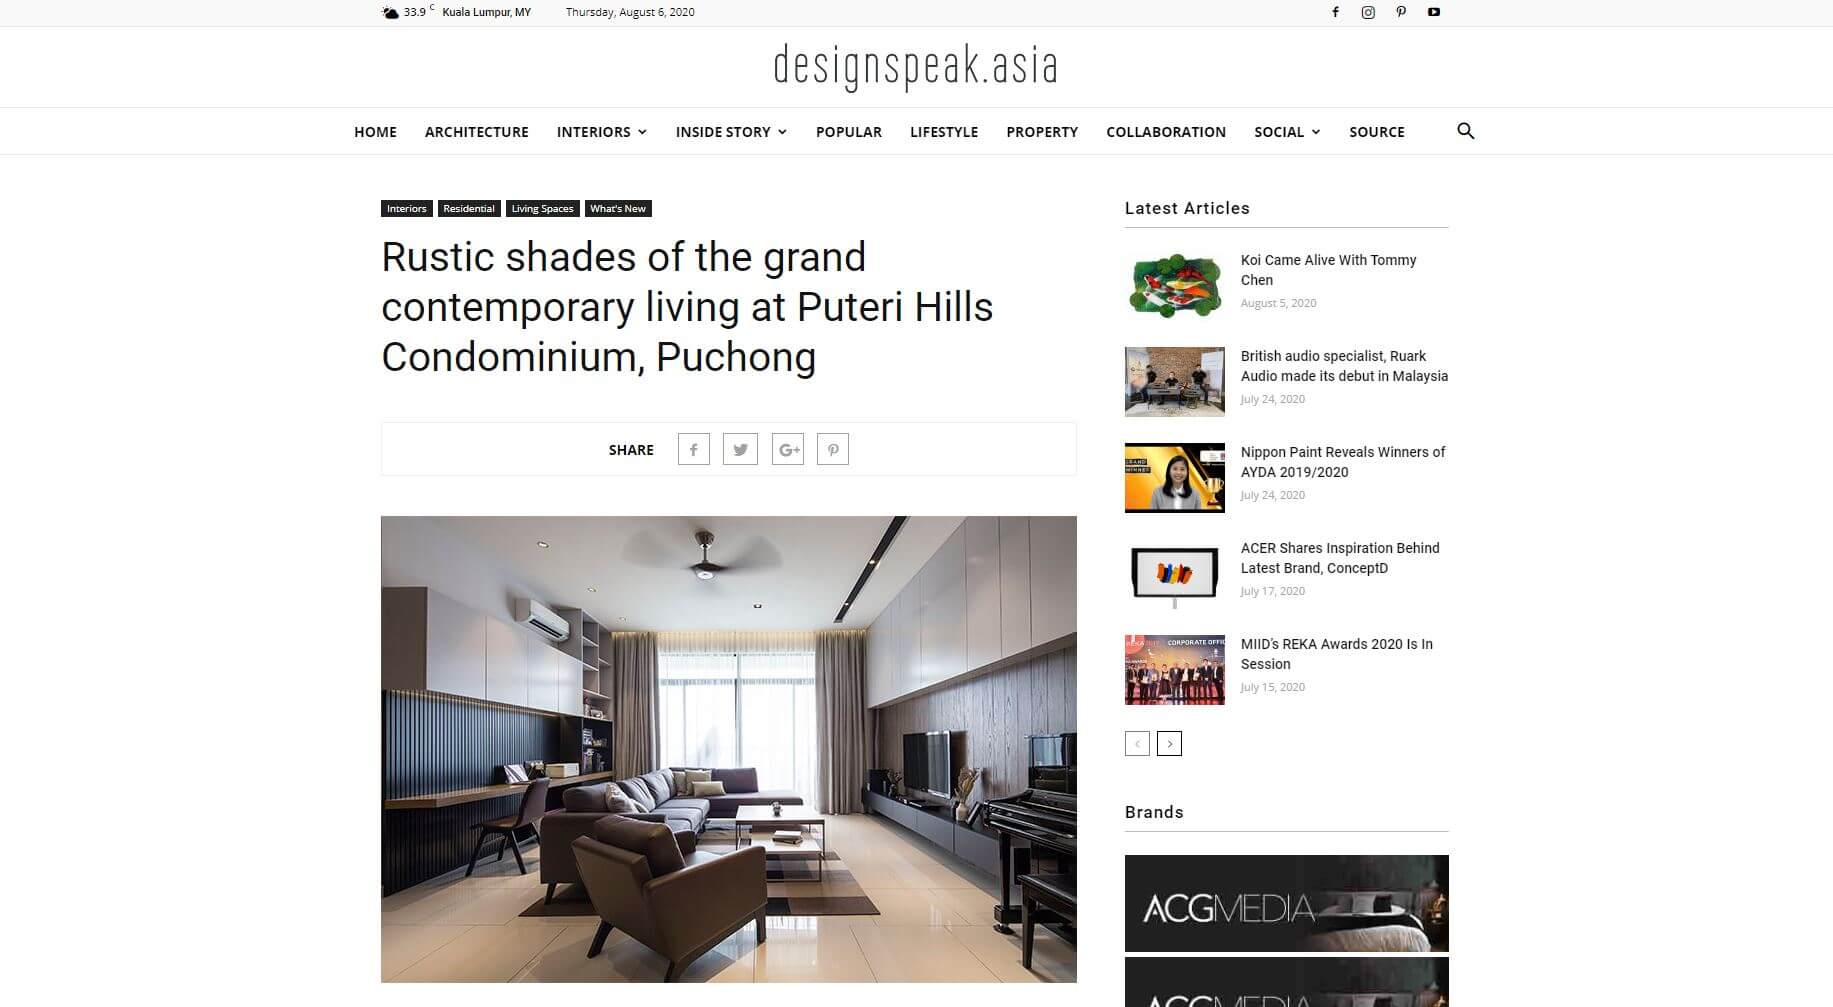 Rustic shades of the grand contemporary living at Puteri Hills Condominium, Puchong, May 2018